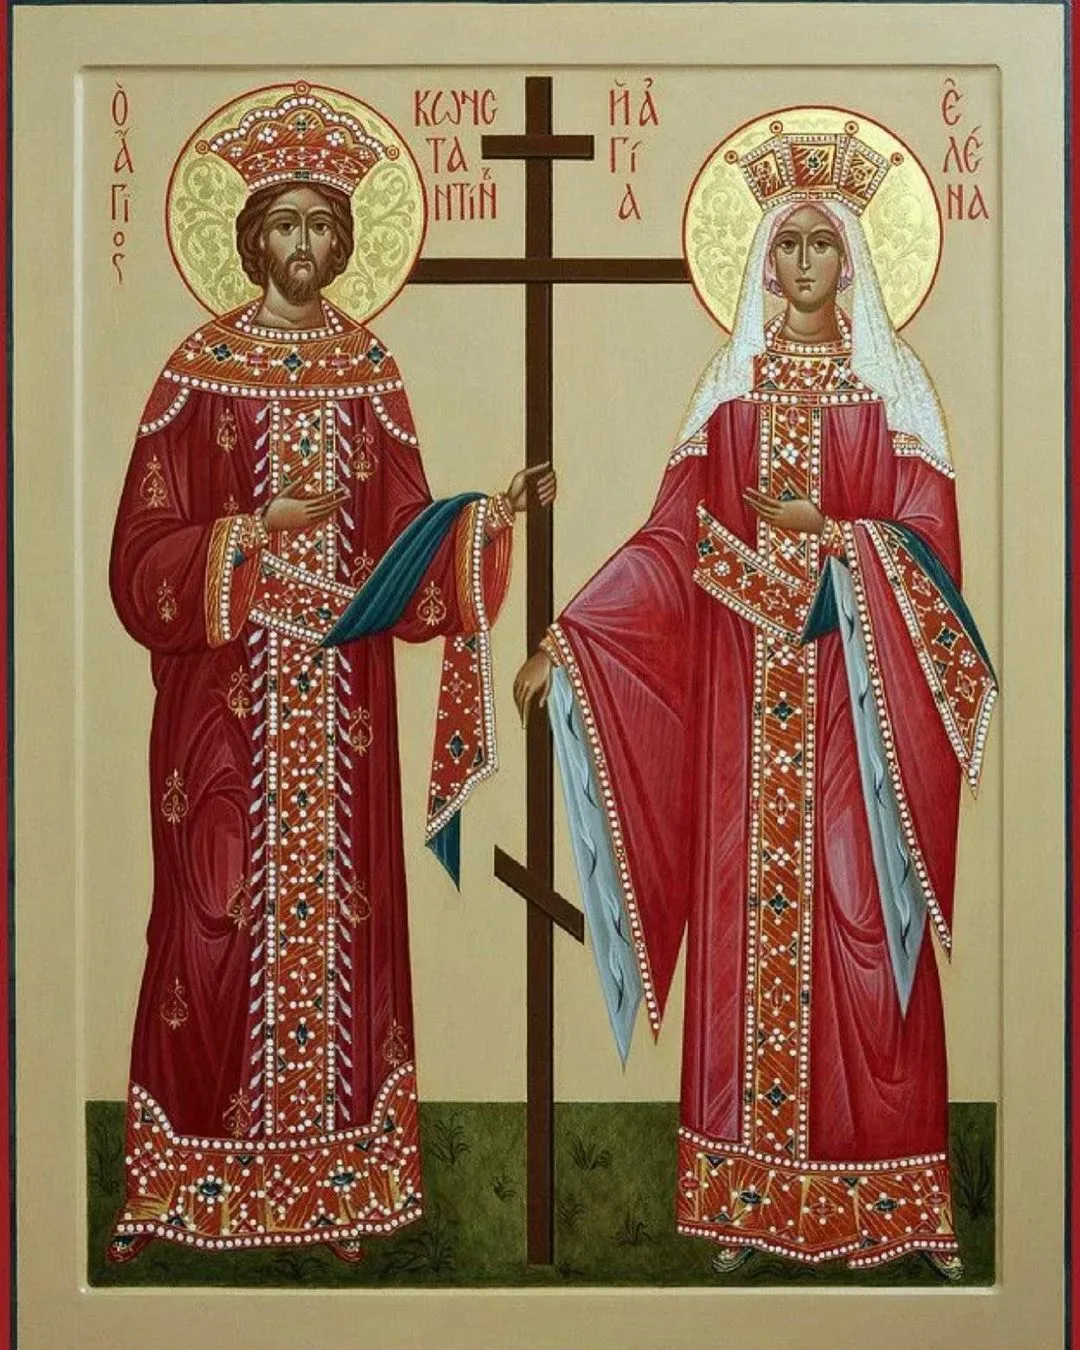 Икона царя Константина и царицы Елены. Имена равноапостольных святых